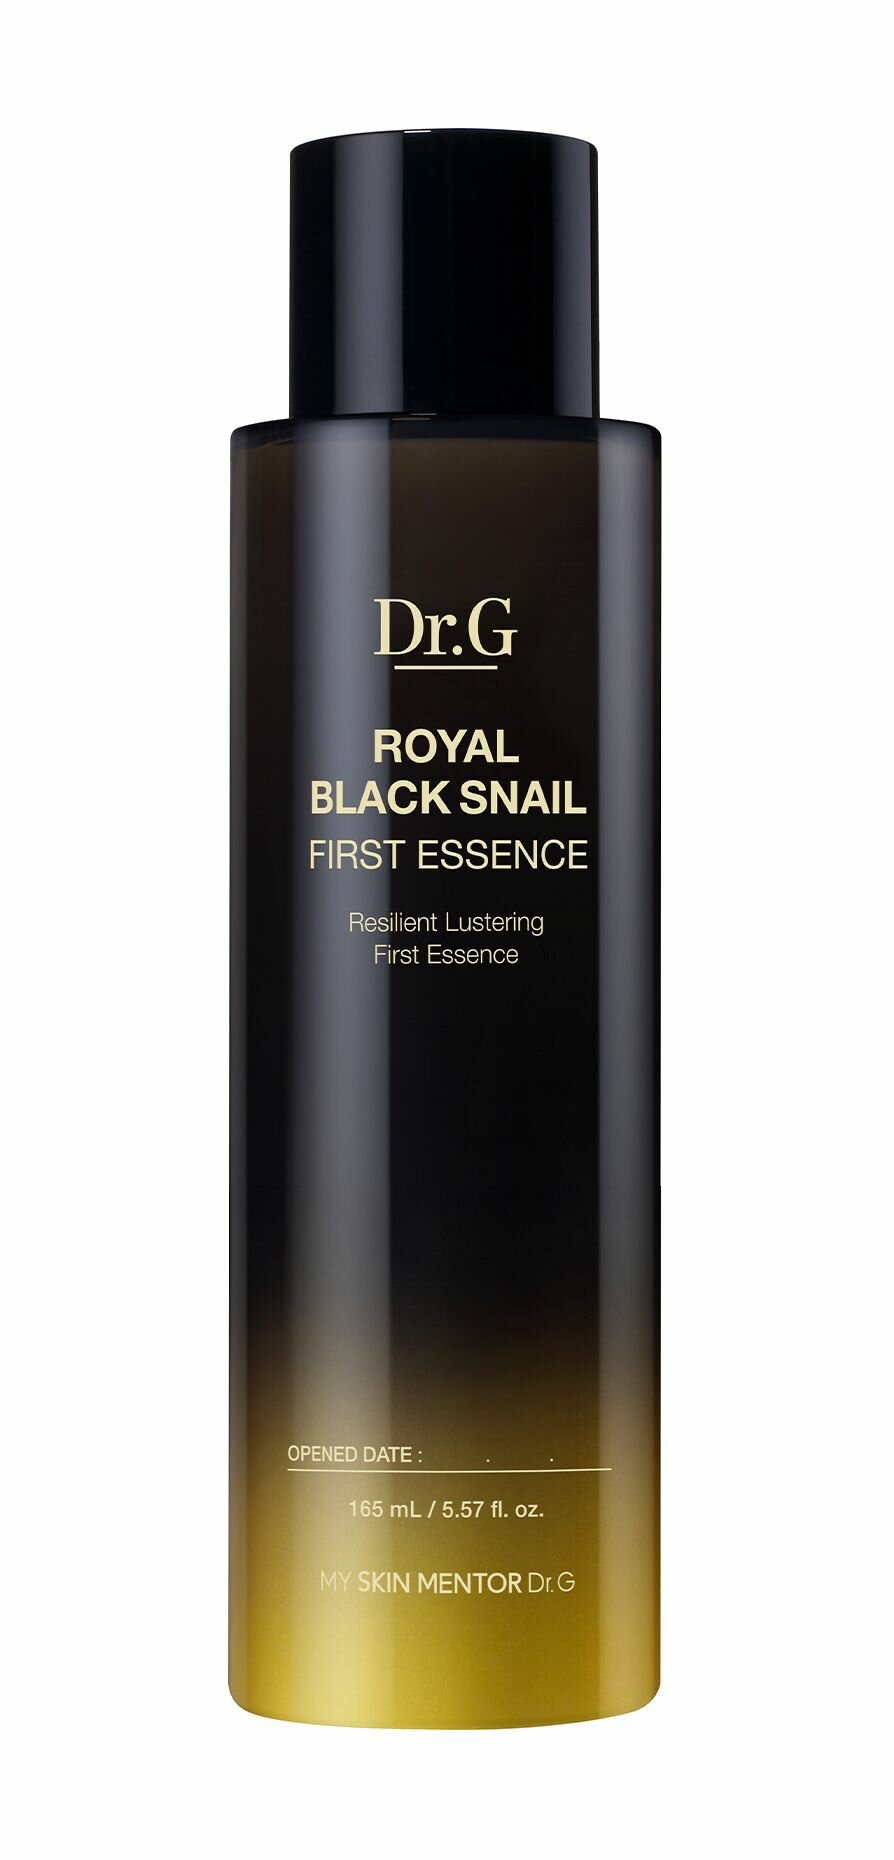 Увлажняющая антивозрастная эссенция для упругой и сияющей кожи лица / Dr.G Royal Black Snail First Essence